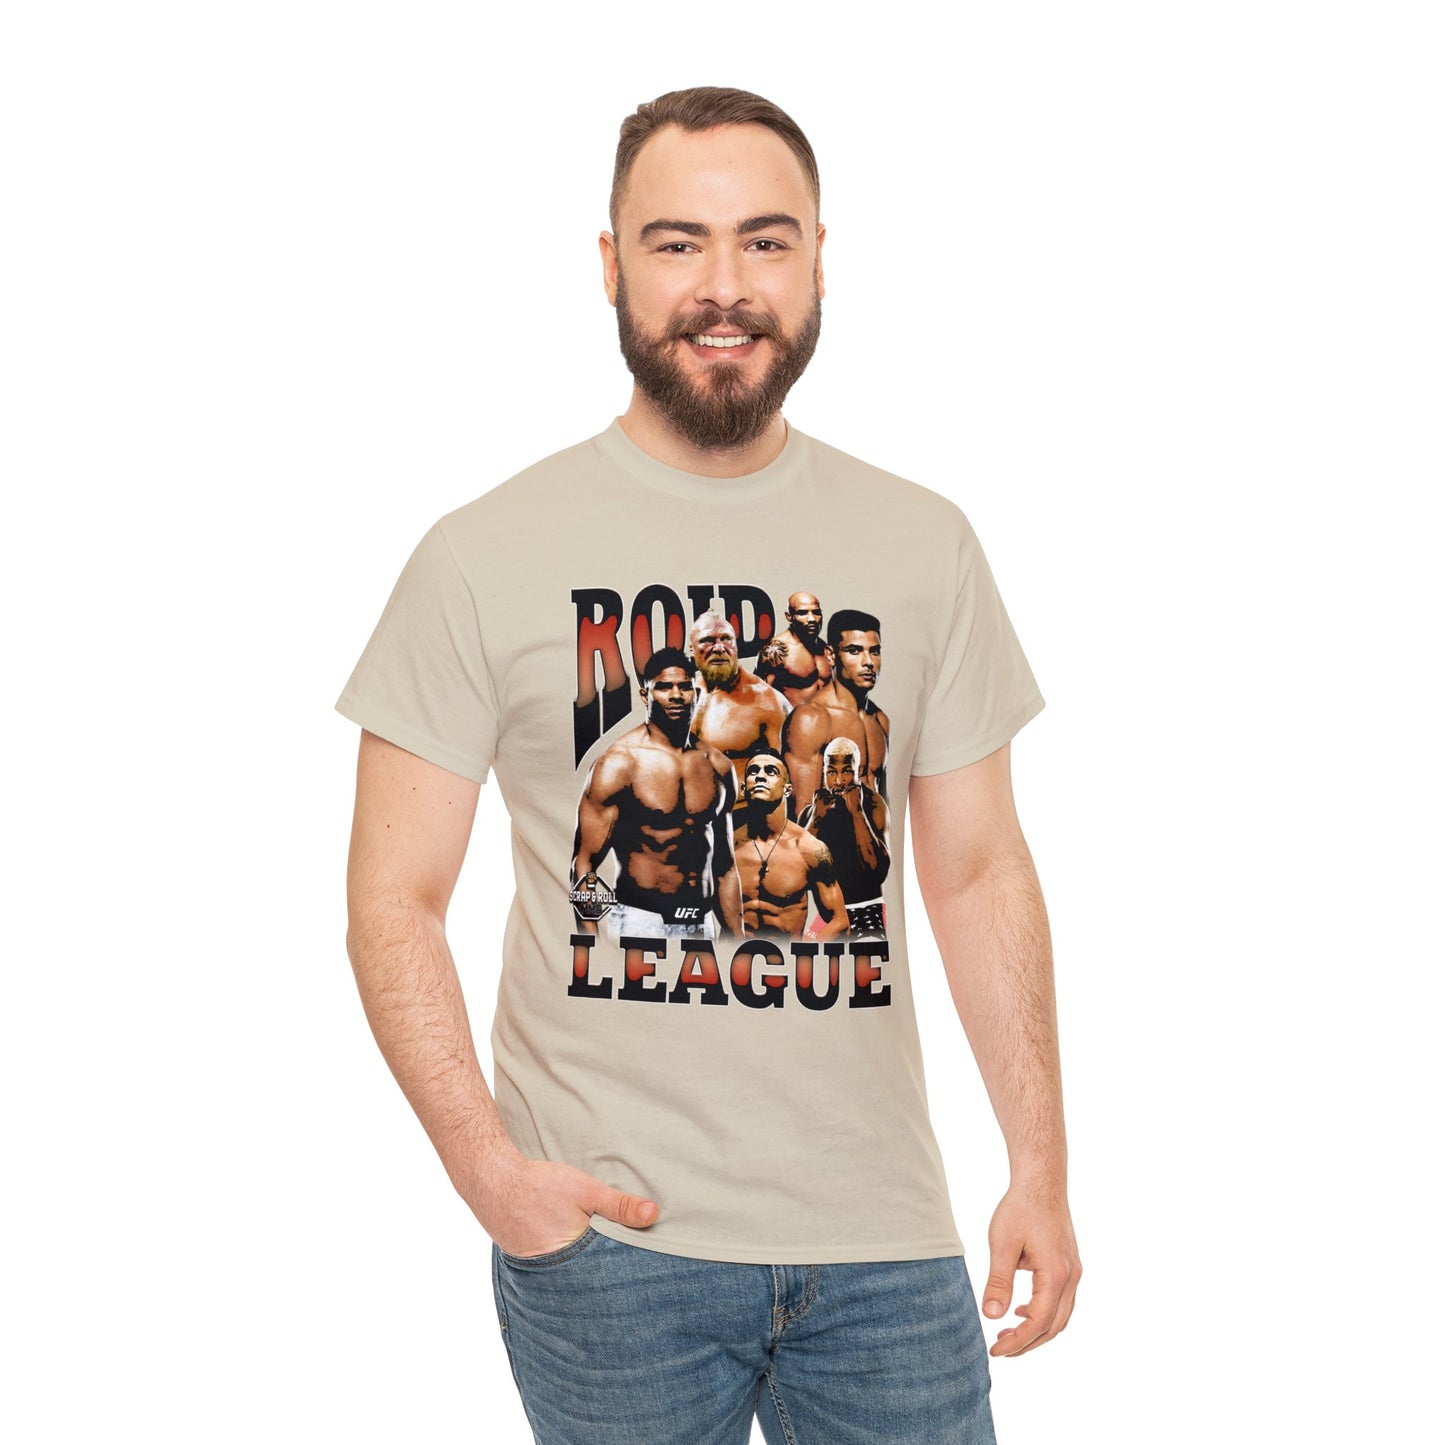 "Roid League" Tshirt